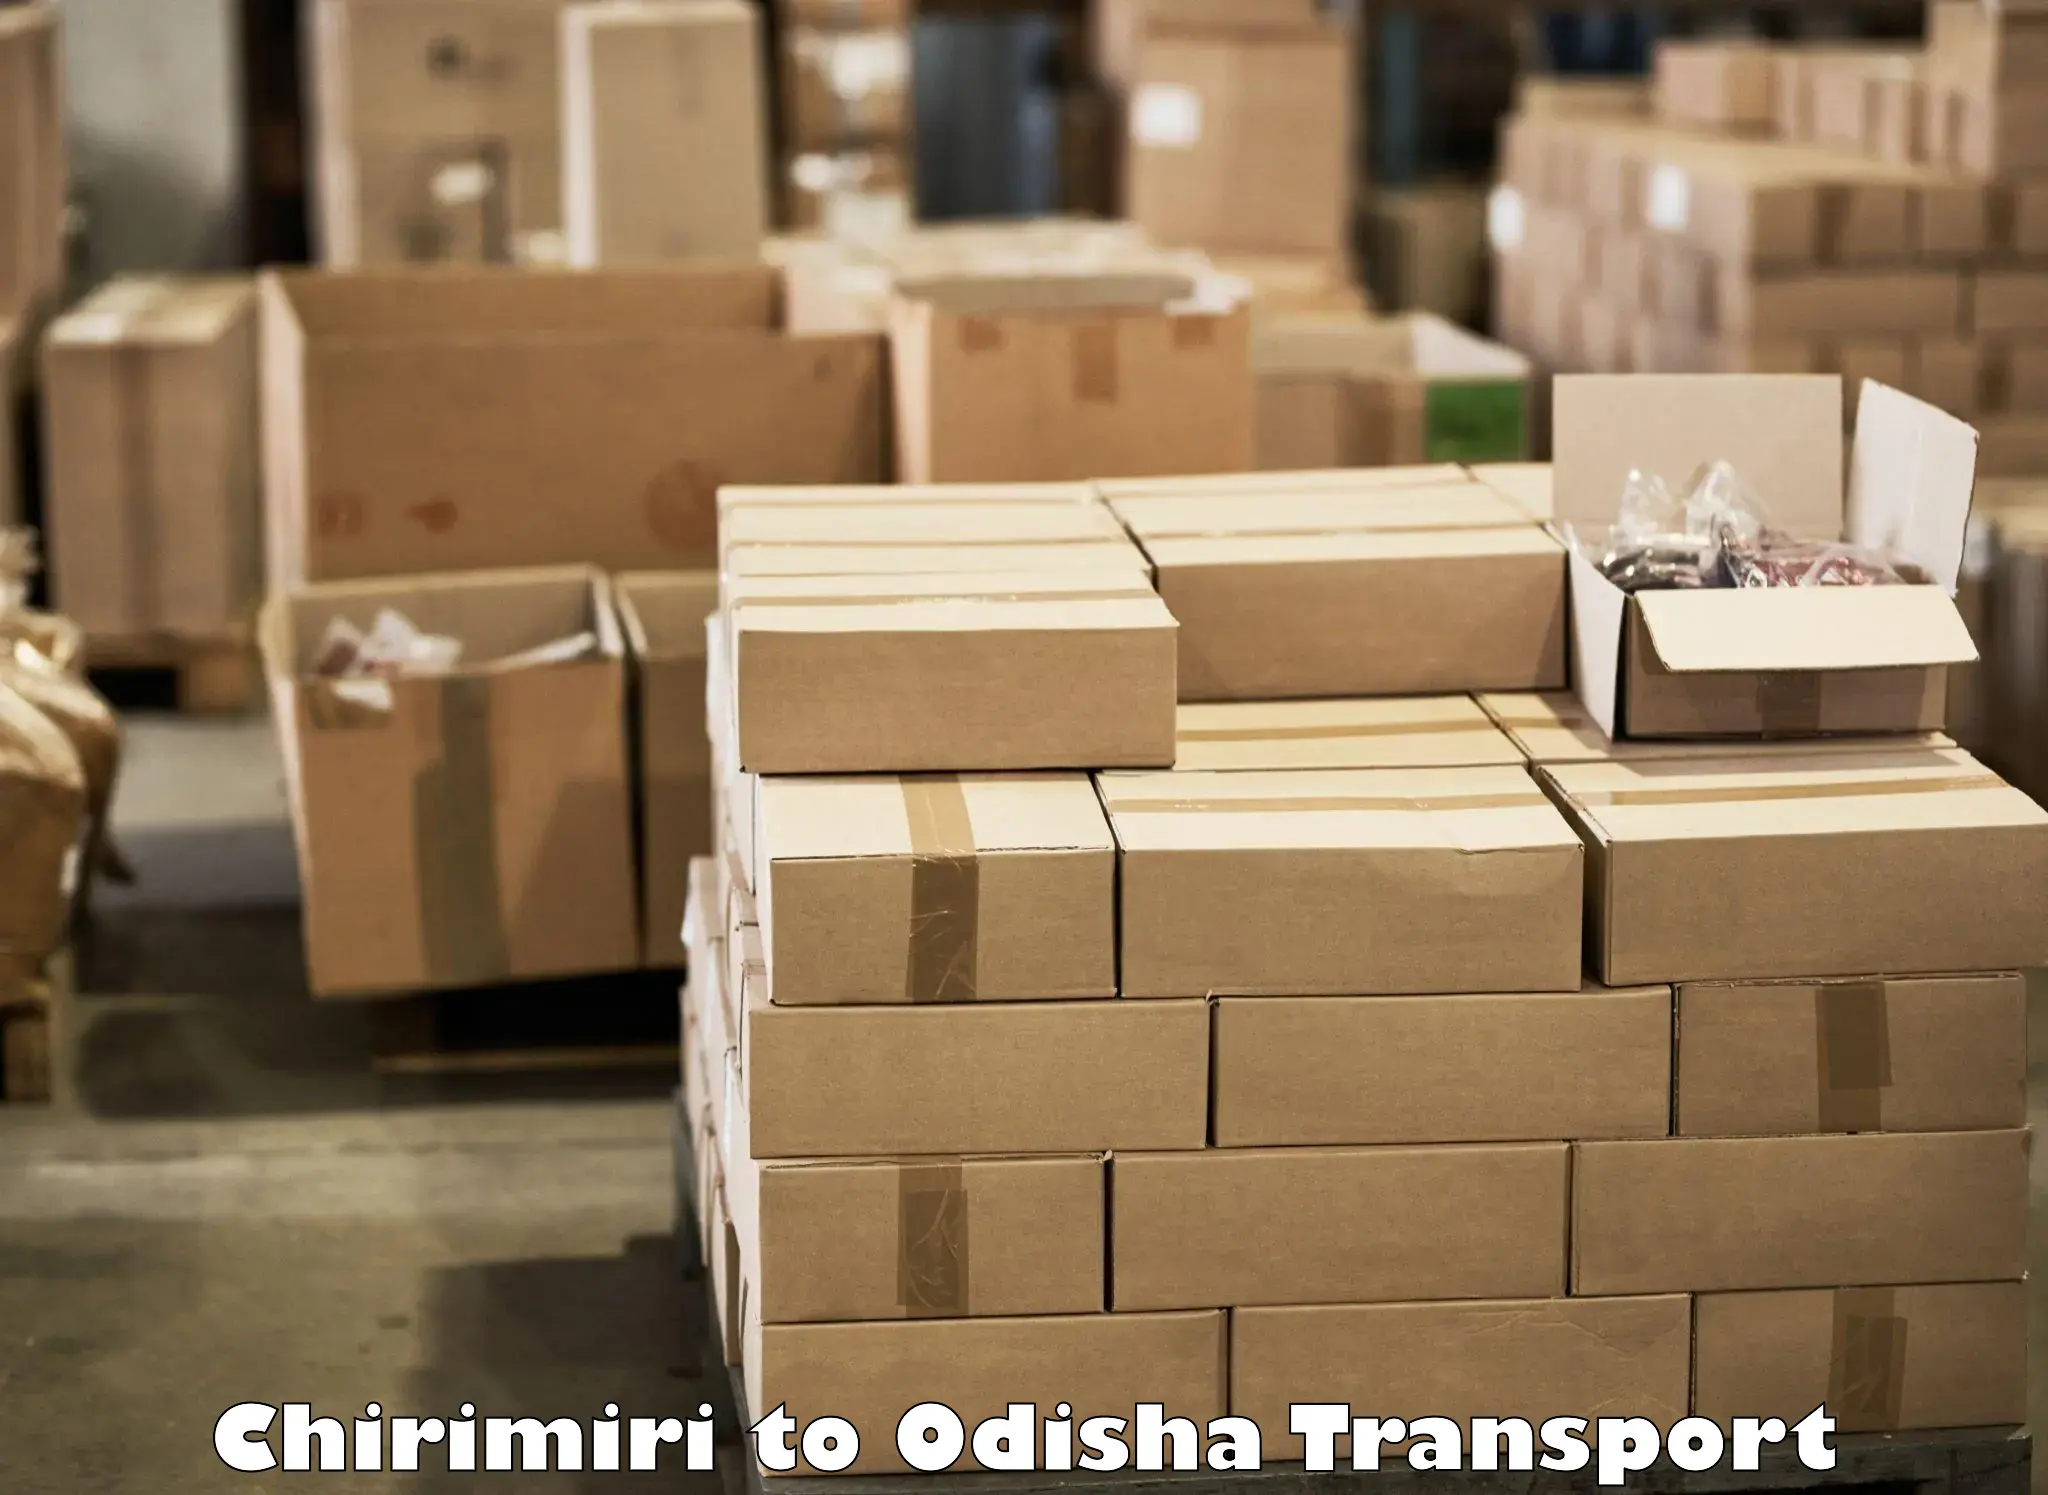 Pick up transport service Chirimiri to Umerkote